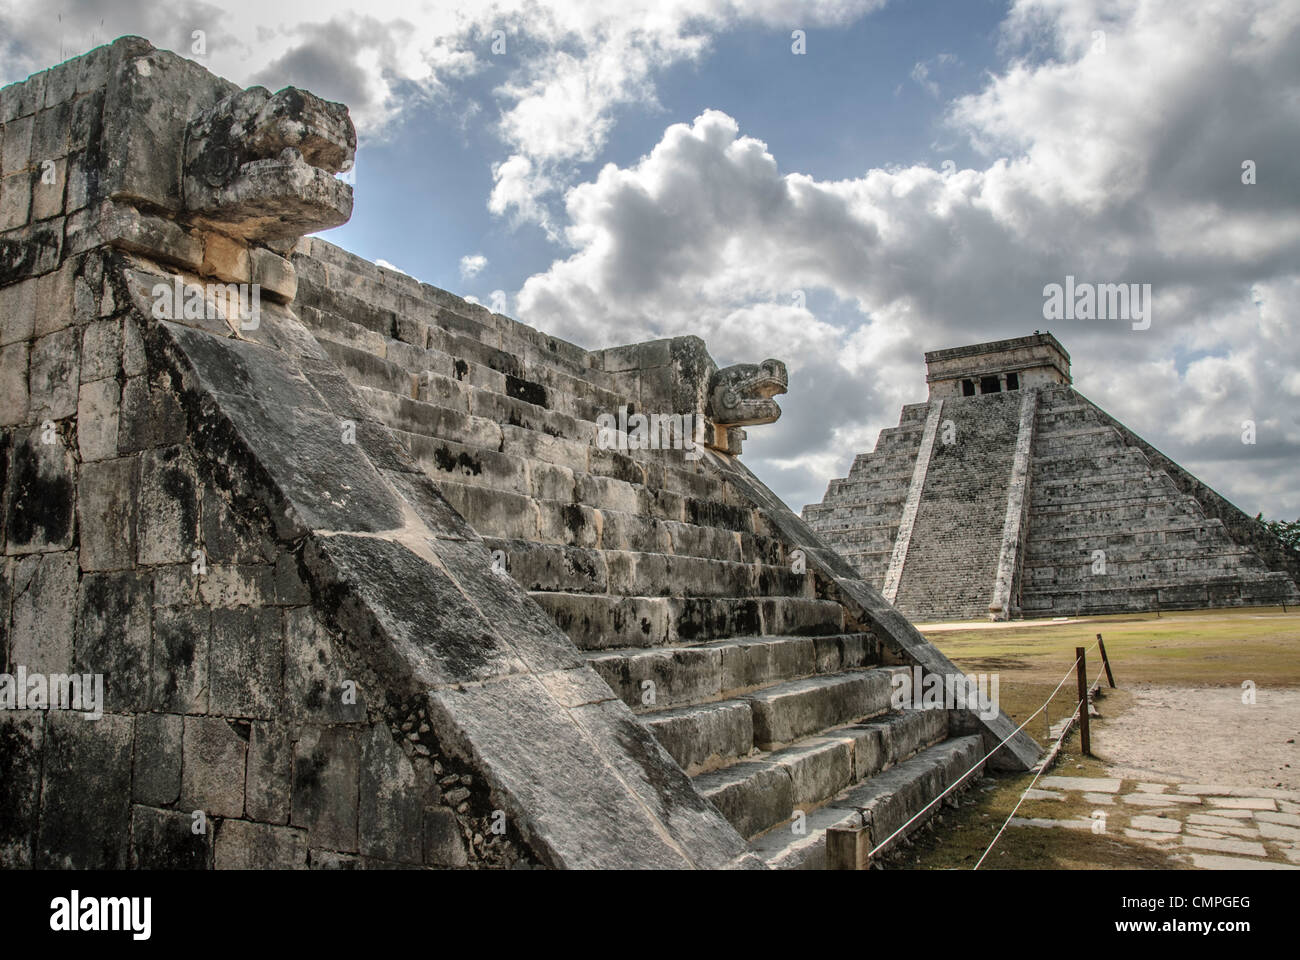 CHICHEN ITZA, Messico - sullo sfondo a destra è il tempio di Kukulkan (El Castillo) e a sinistra in primo piano sono scolpite le teste jaguar della piattaforma di Venere a Chichen Itza Zona archeologica e le rovine di una grande civiltà Maya città nel cuore della Penisola dello Yucatan del Messico. Foto Stock